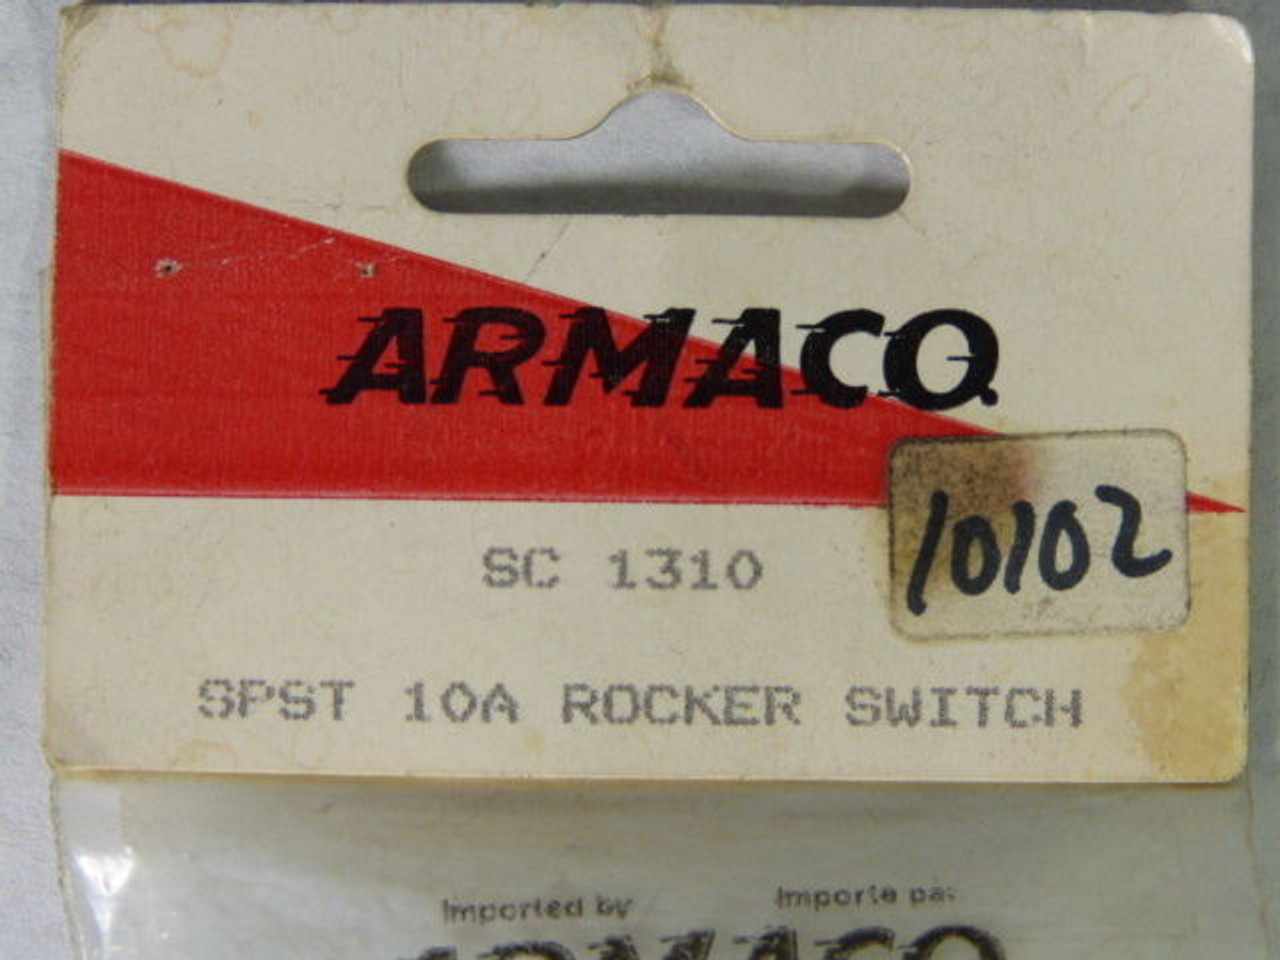 Armaco SC1310 Rocker Switch 10amp ! NEW !